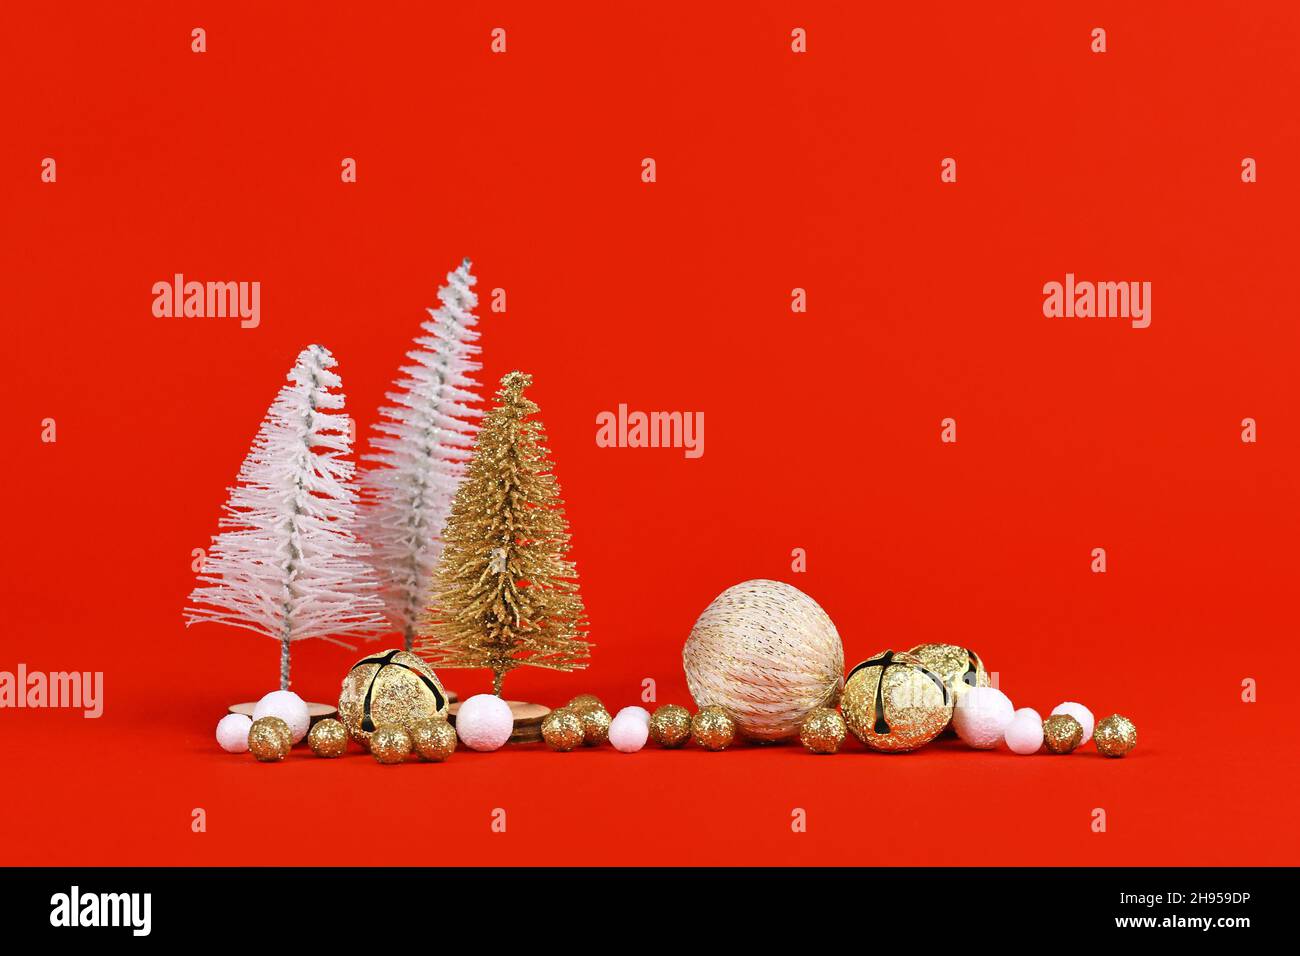 Goldene und weiße Miniaturkiefern neben weihnachtsbaumkugeln auf rotem Hintergrund Stockfoto